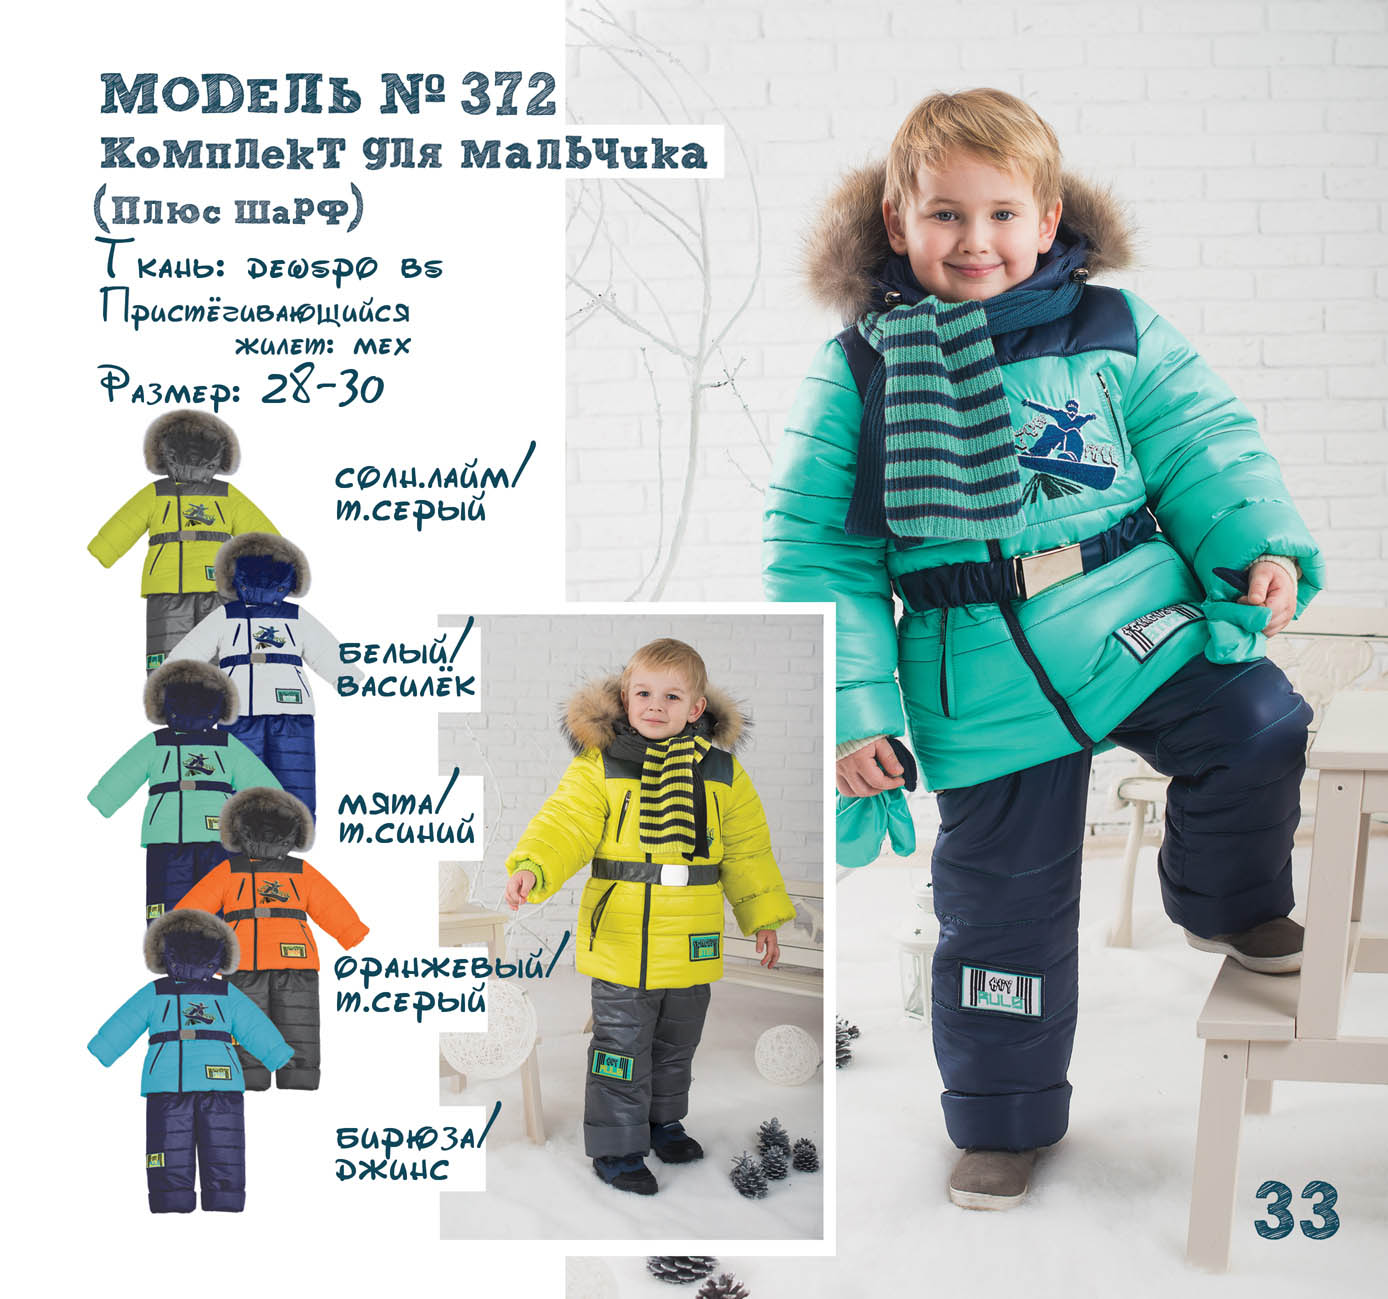 My new step. New Step детская одежда. Комплект для мальчика. 051 Комплект для мальчика. Loading комплект (куртка+полукомбинезон) для мальчиков Baby GО.